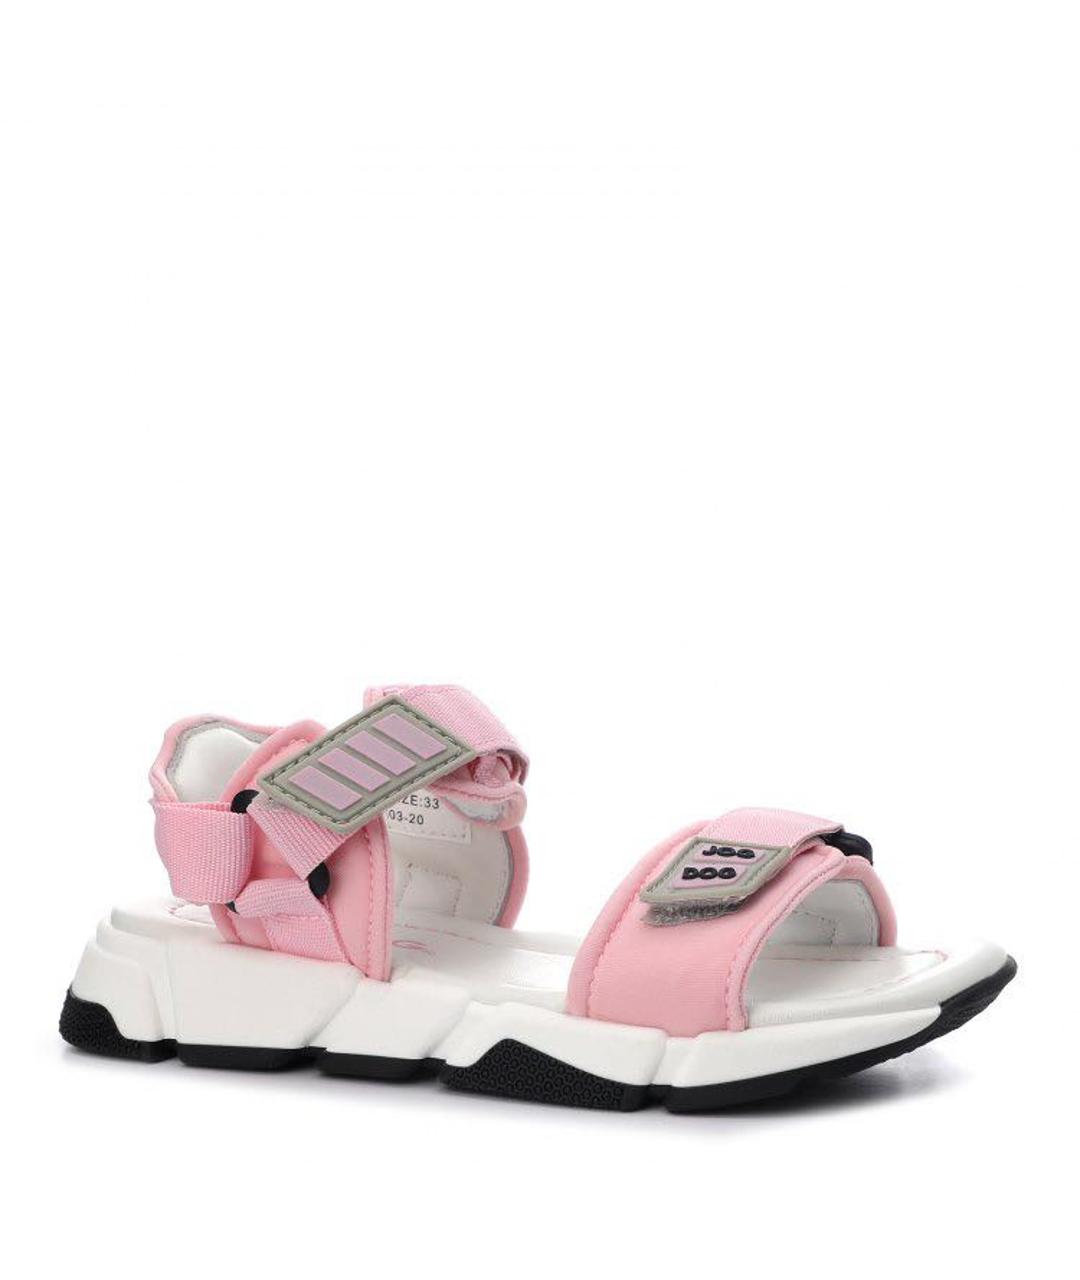 JOG DOG Розовые текстильные сандалии и шлепанцы, фото 1